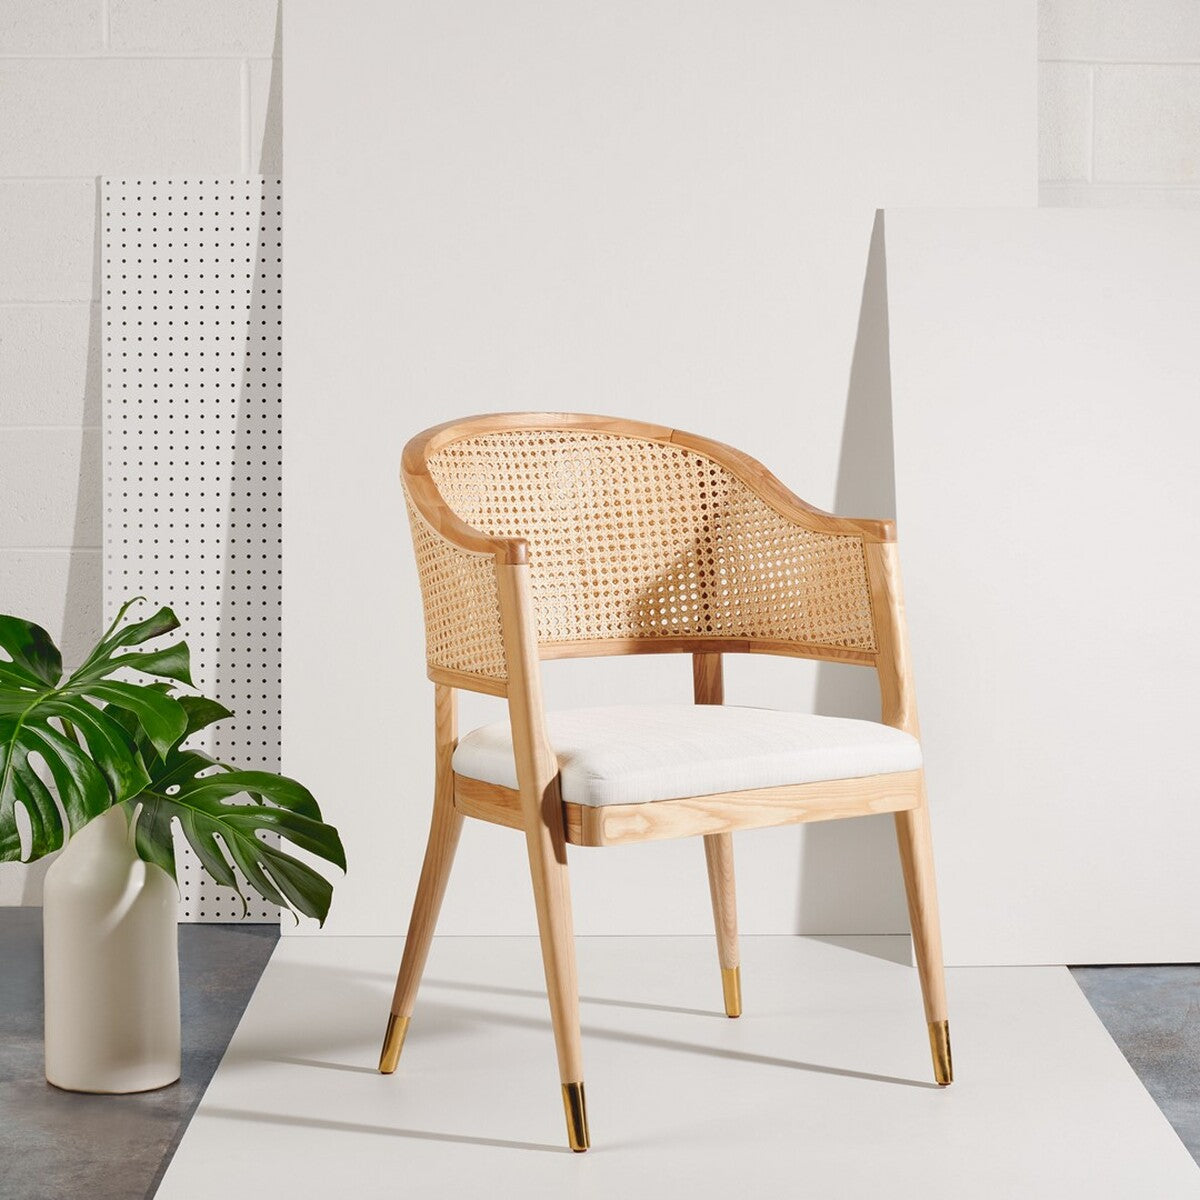 Những chiếc ghế sồi với thiết kế độc đáo, phần viền uốn lượn hứa hẹn sẽ trở thành mẫu sản phẩm tạo nên cơn sốt trên thị trường nội thất trong thời gian tới